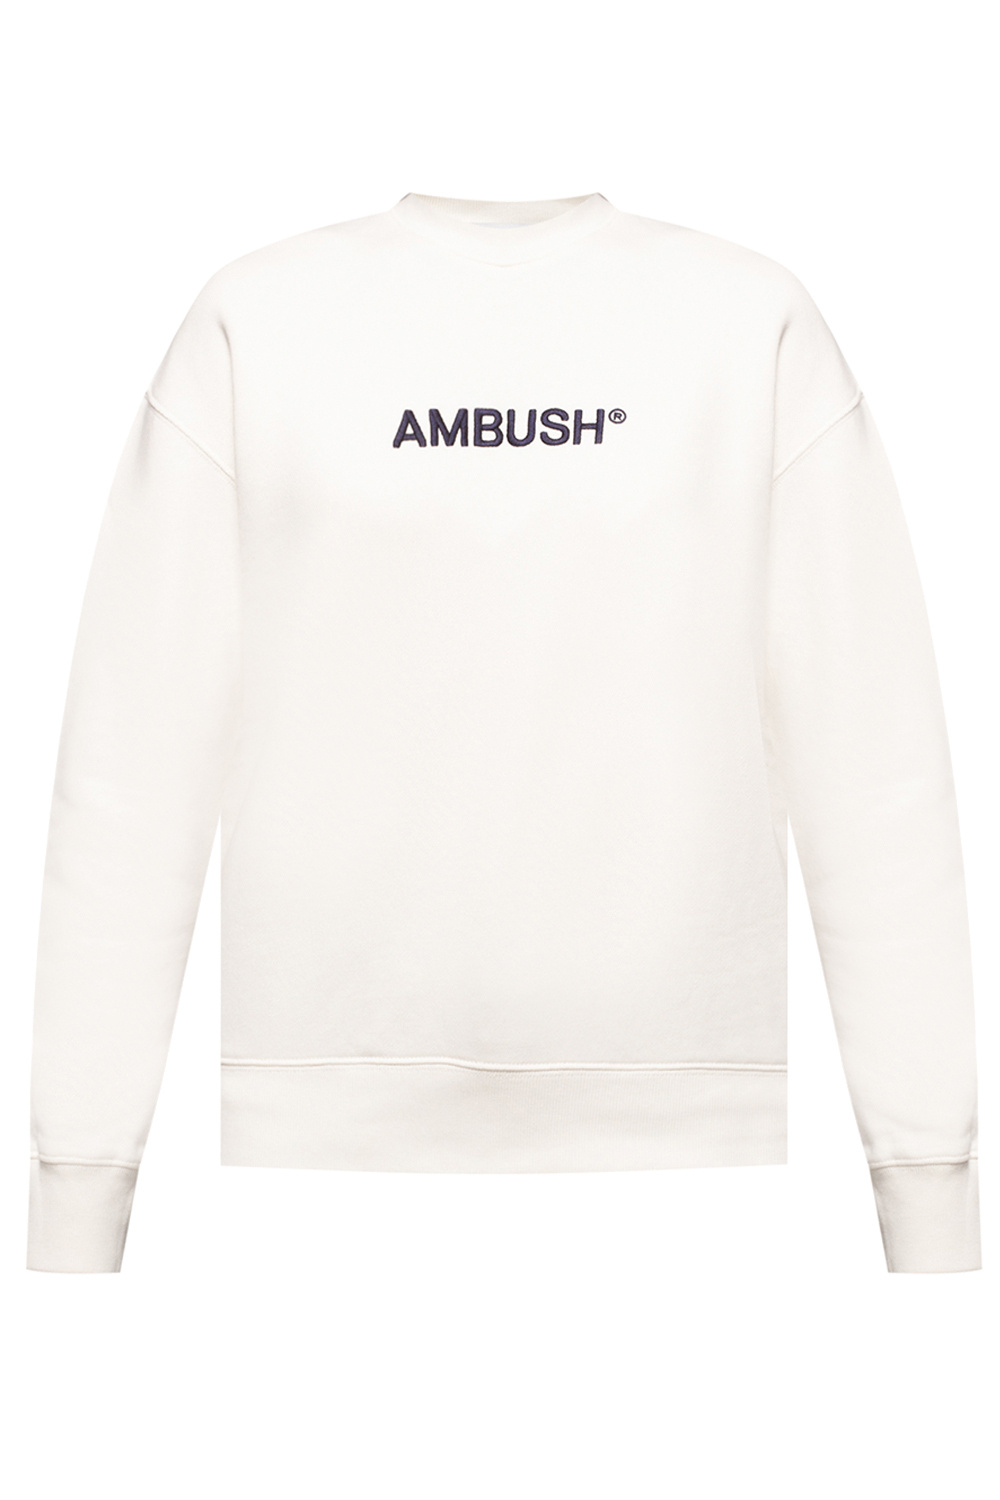 Ambush off white 1 t shirt